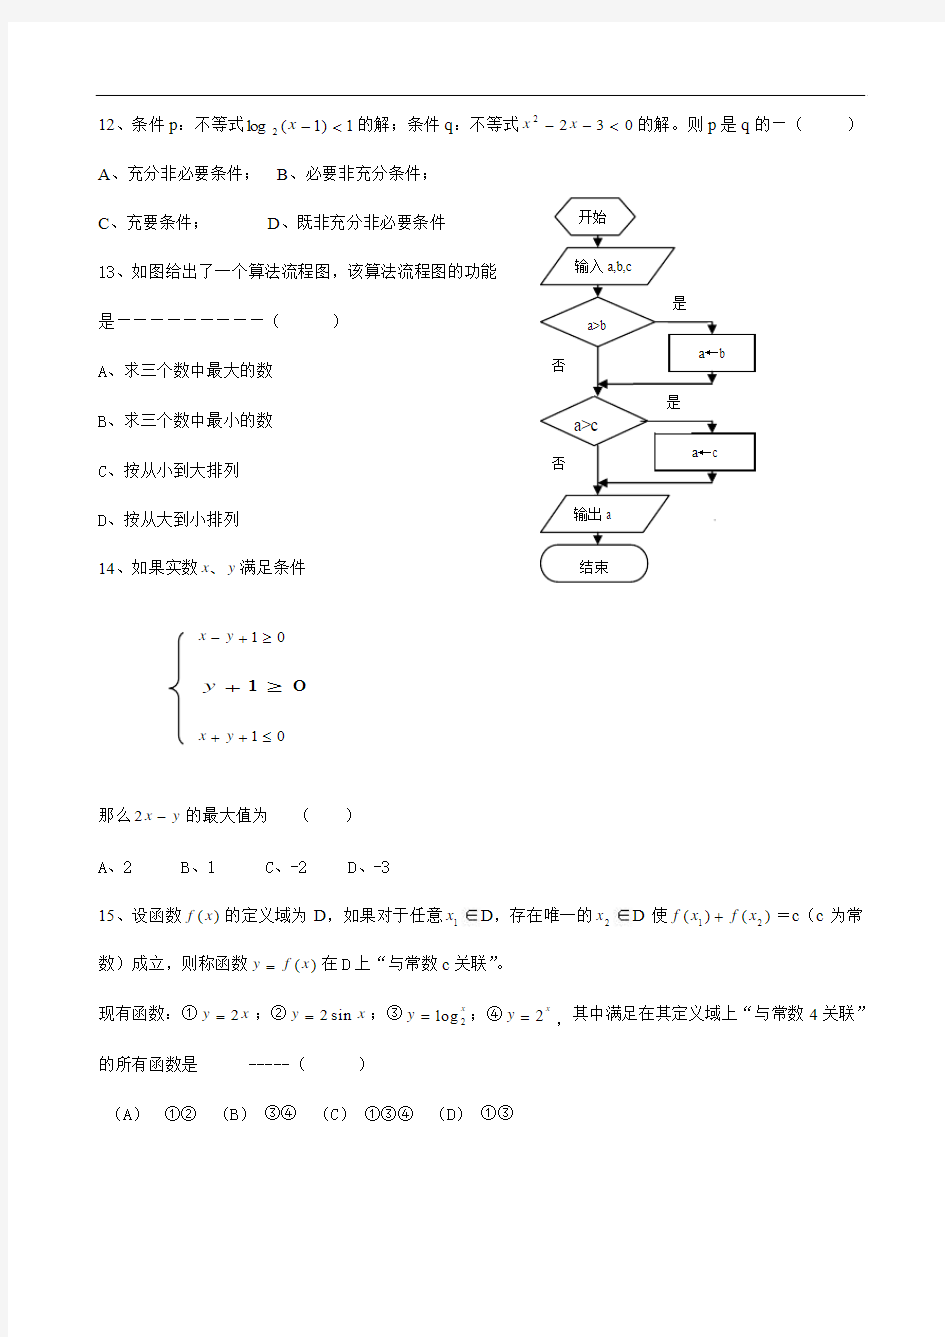 上海市奉贤区2009年高考模拟考试数学试卷(文史类)2009.03